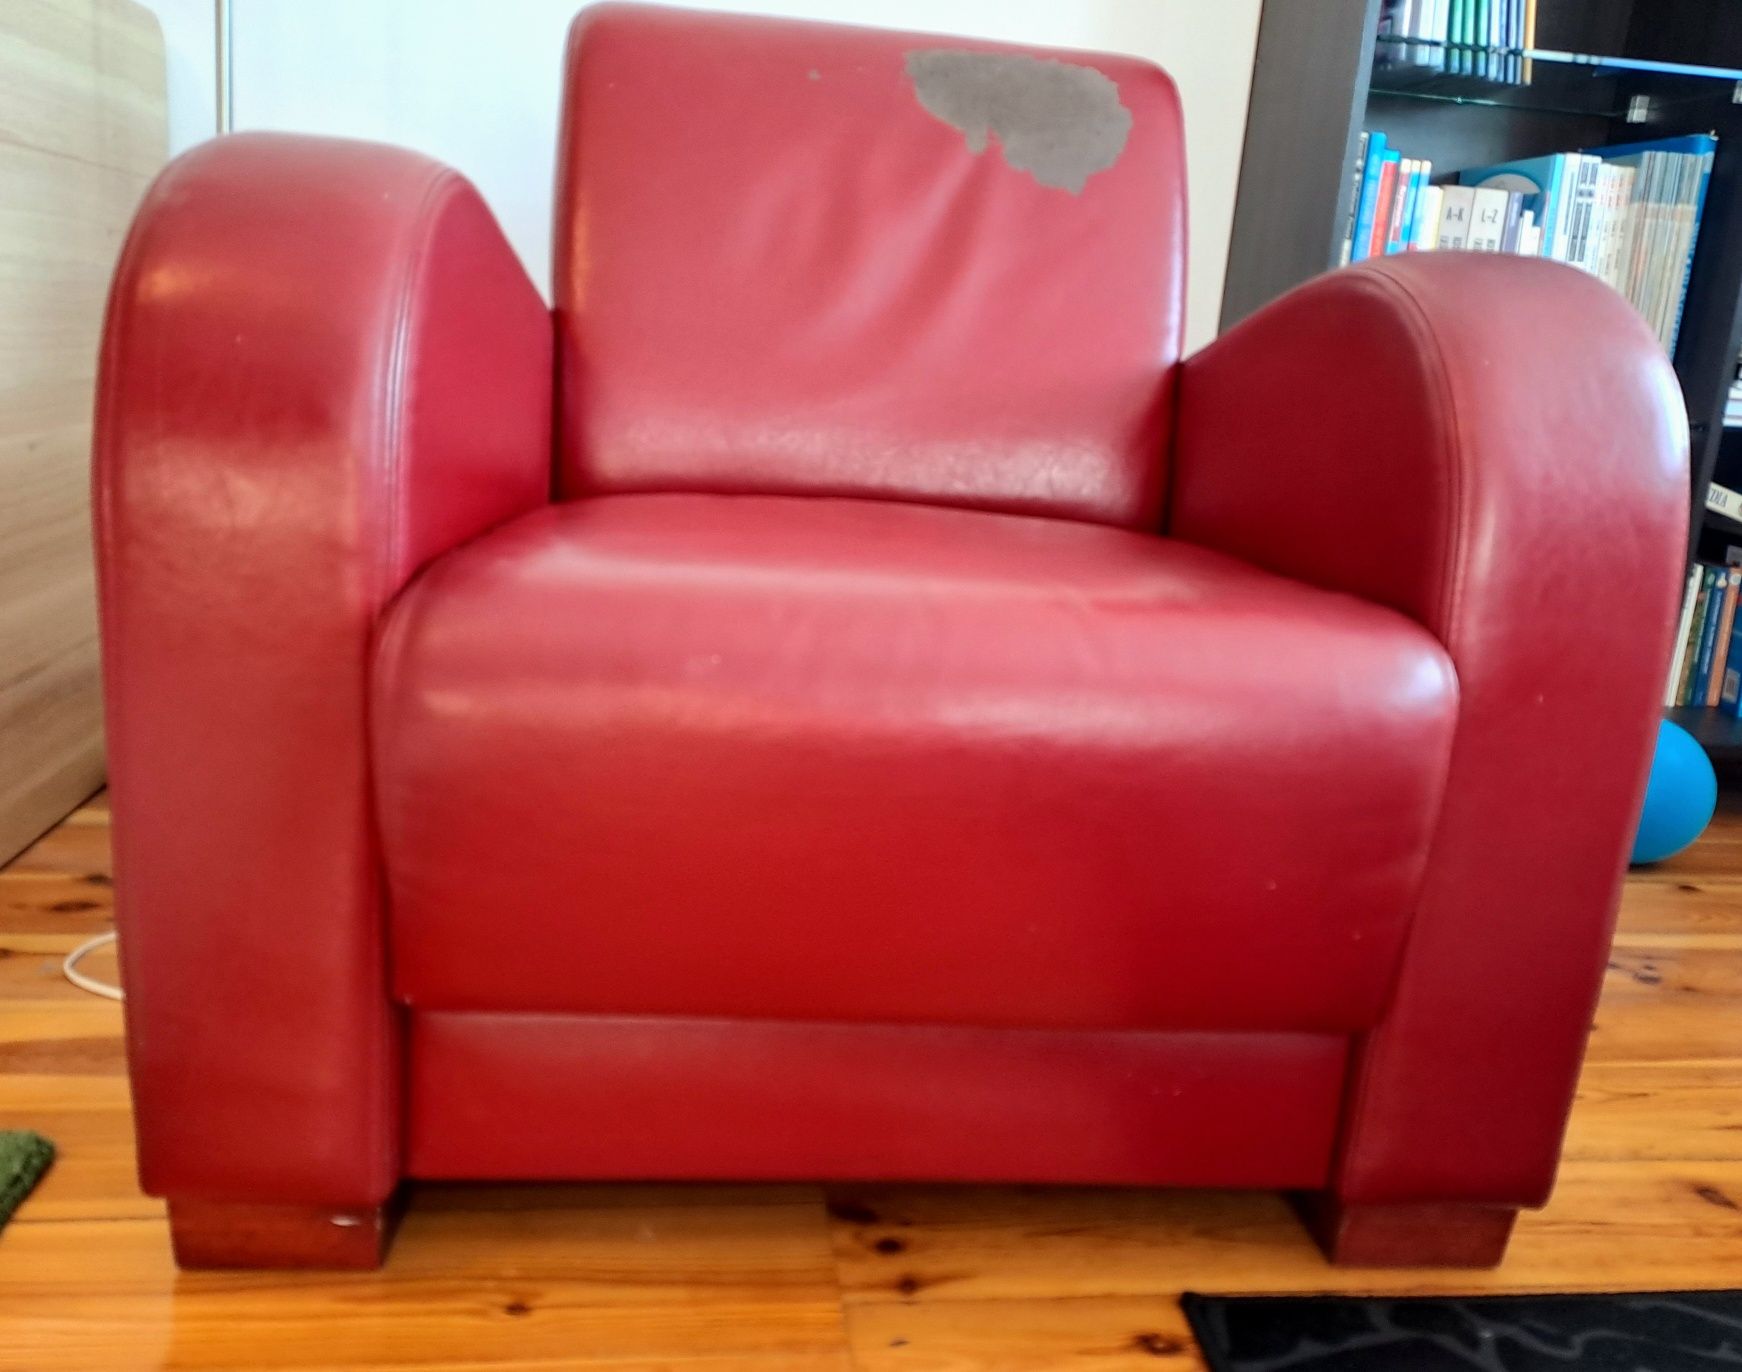 Fotel skórzany czerwony.